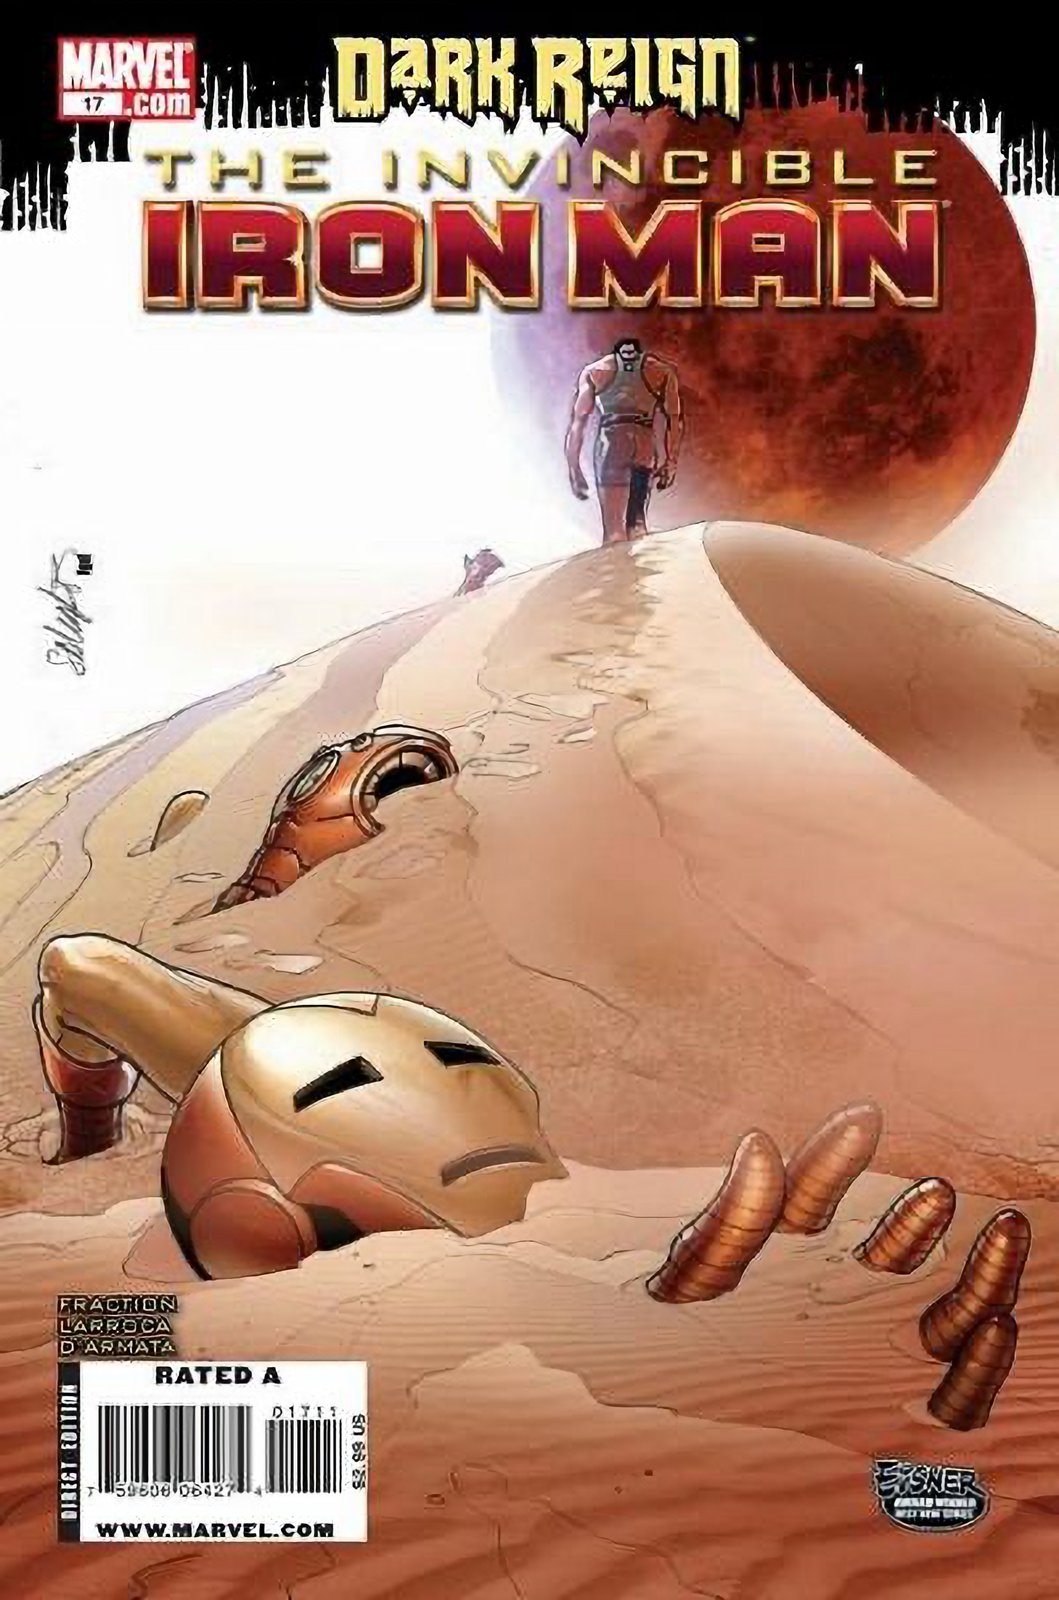 Invincible Iron Man #17 (2008-2012) Marvel Comics